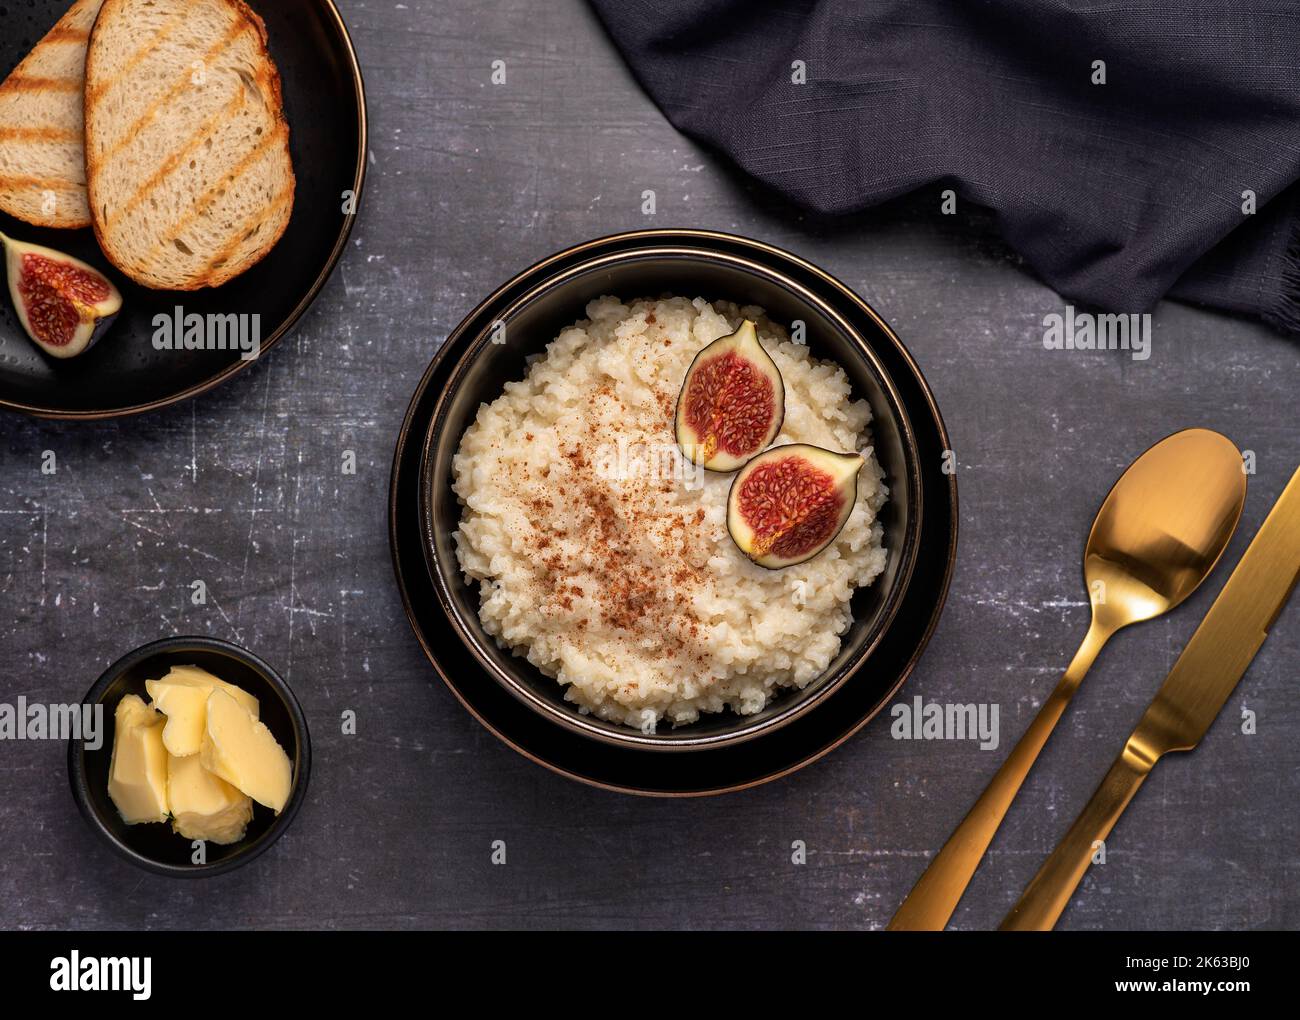 Fotografia alimentare di porridge di riso, budino, cereali, fichi, cannella, burro, pane tostato Foto Stock